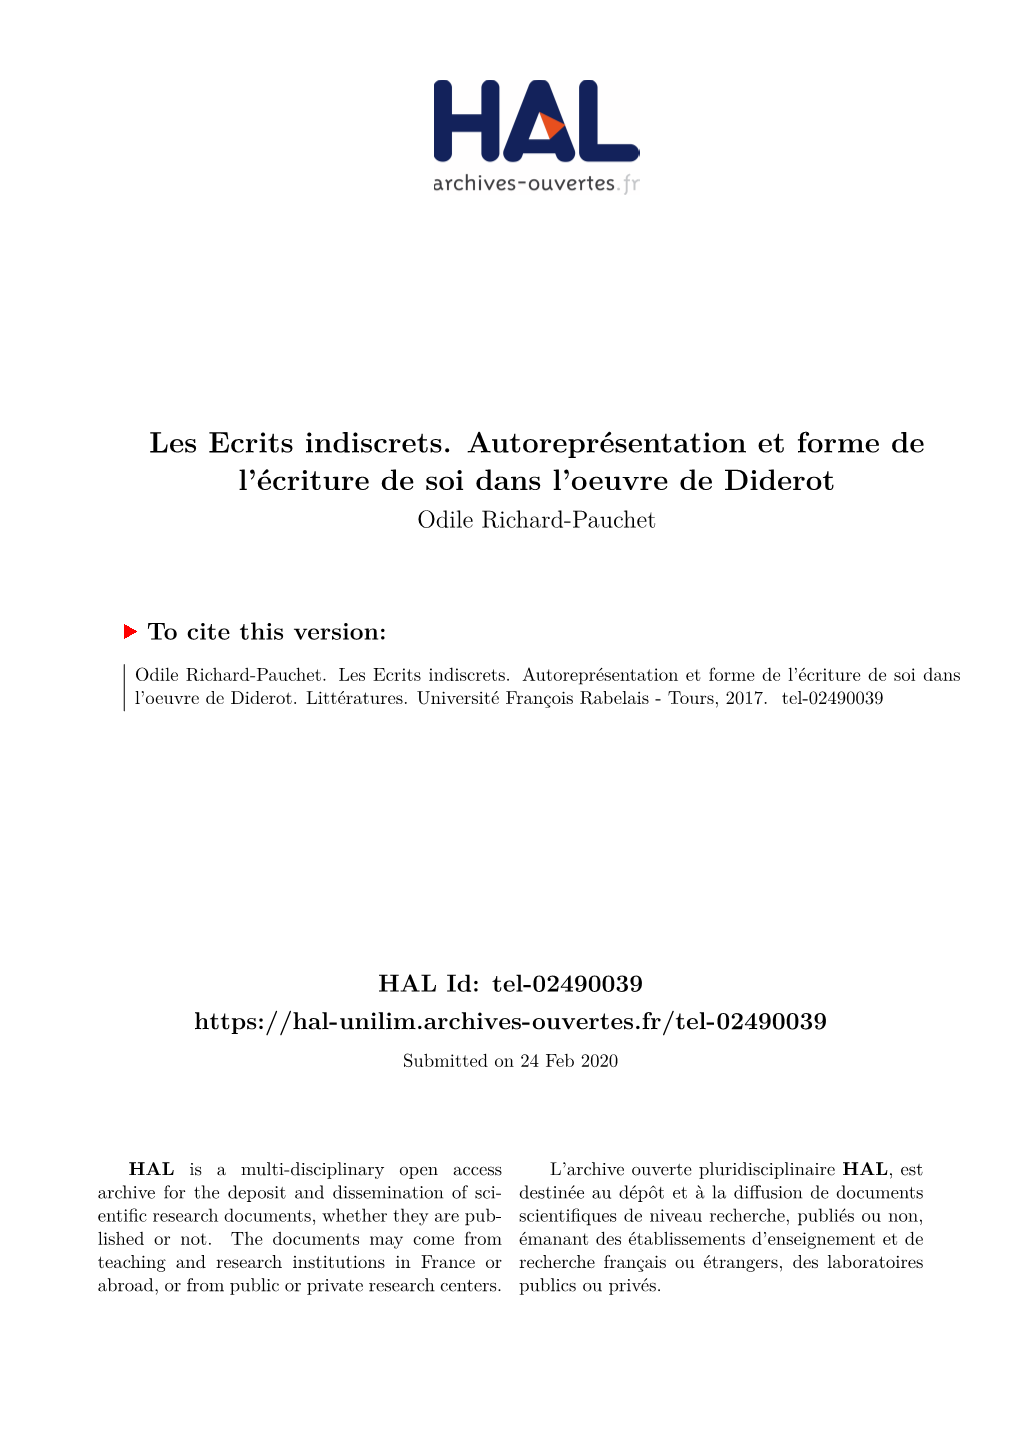 Les Ecrits Indiscrets. Autoreprésentation Et Forme De L’Écriture De Soi Dans L’Oeuvre De Diderot Odile Richard-Pauchet